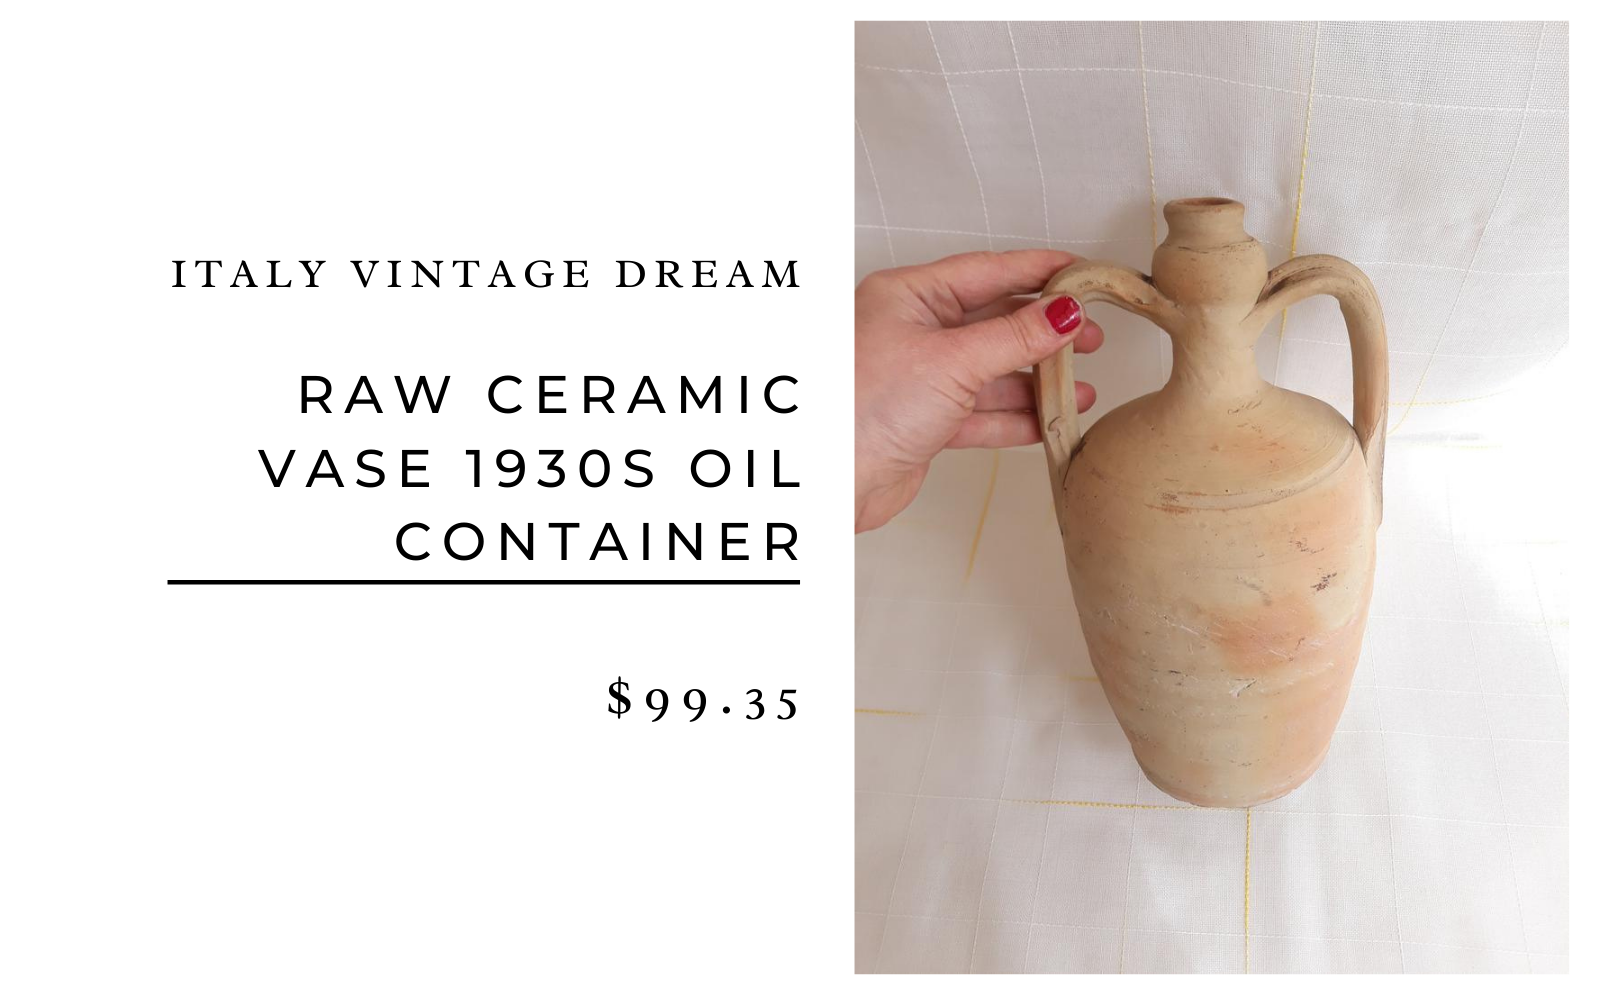 Italy Vintage Dream Raw Ceramic Vase 1930s Oil Container